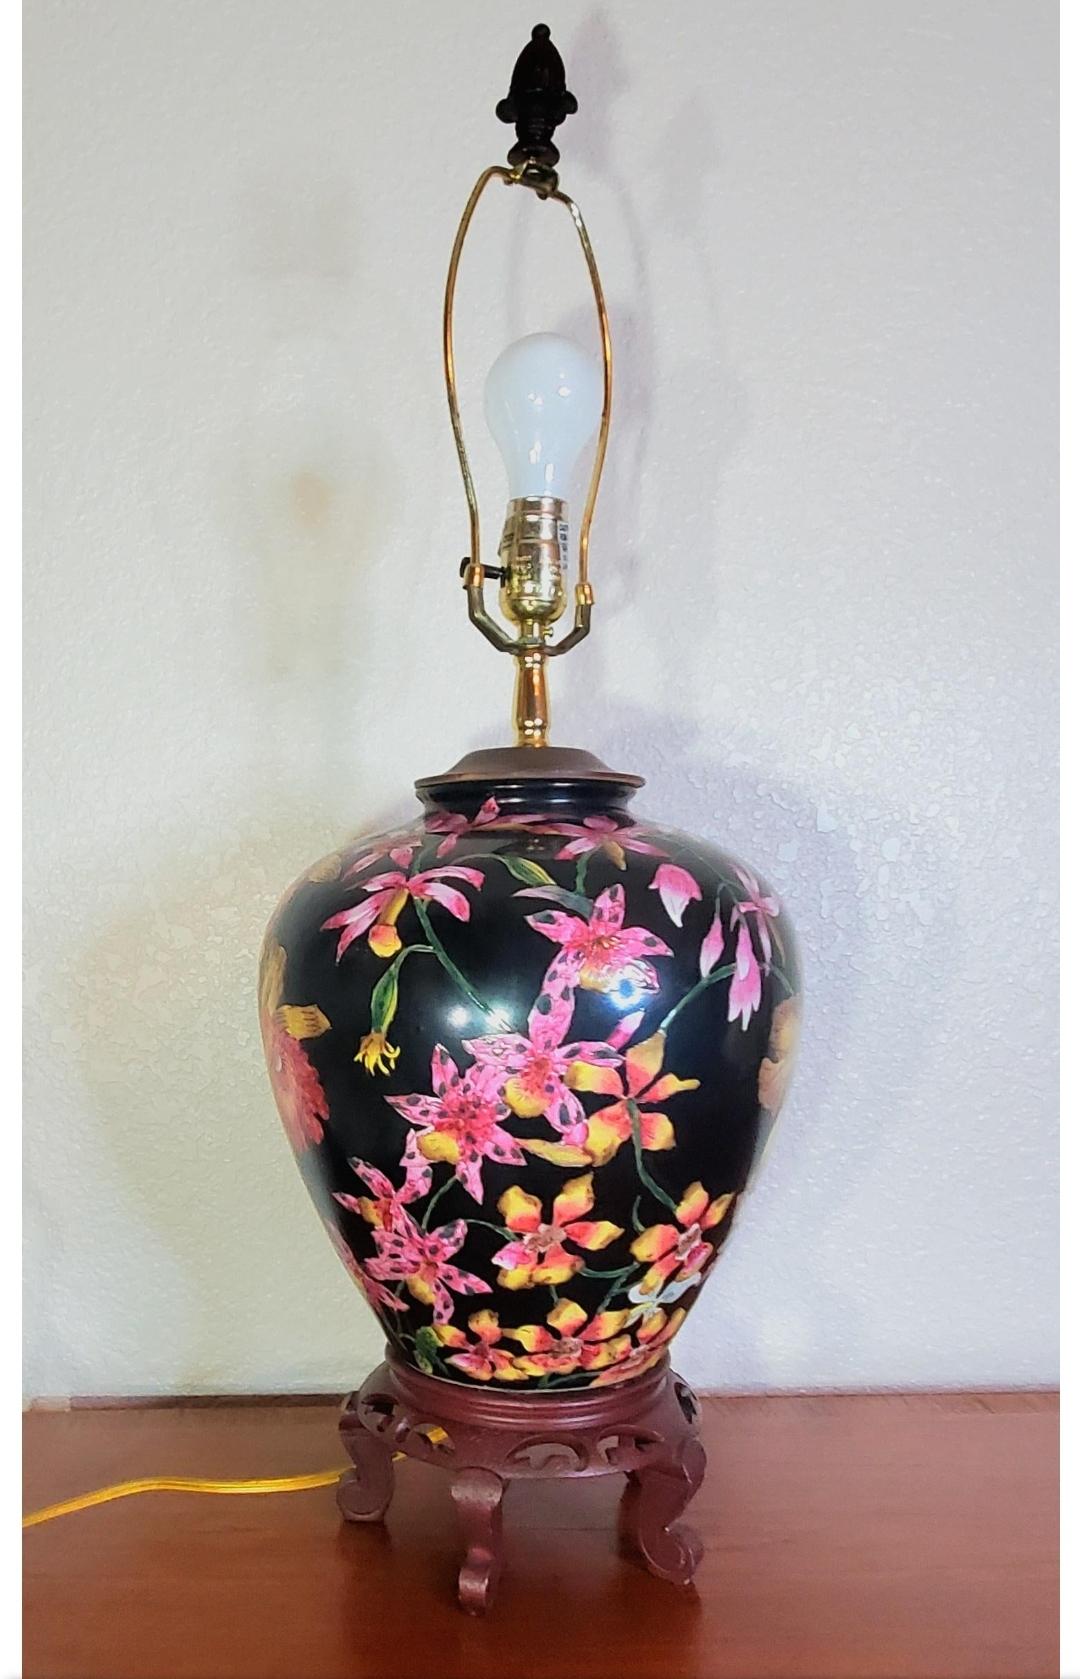 Superbe lampe chinoise à pot de gingembre de style Hollywood regency.
Le vase détaillé et complexe comprend des iris et des fleurs de cerisier.
Socle en bois sculpté.

On dirait que le vase en pot de gingembre a été transformé en lampe dans les